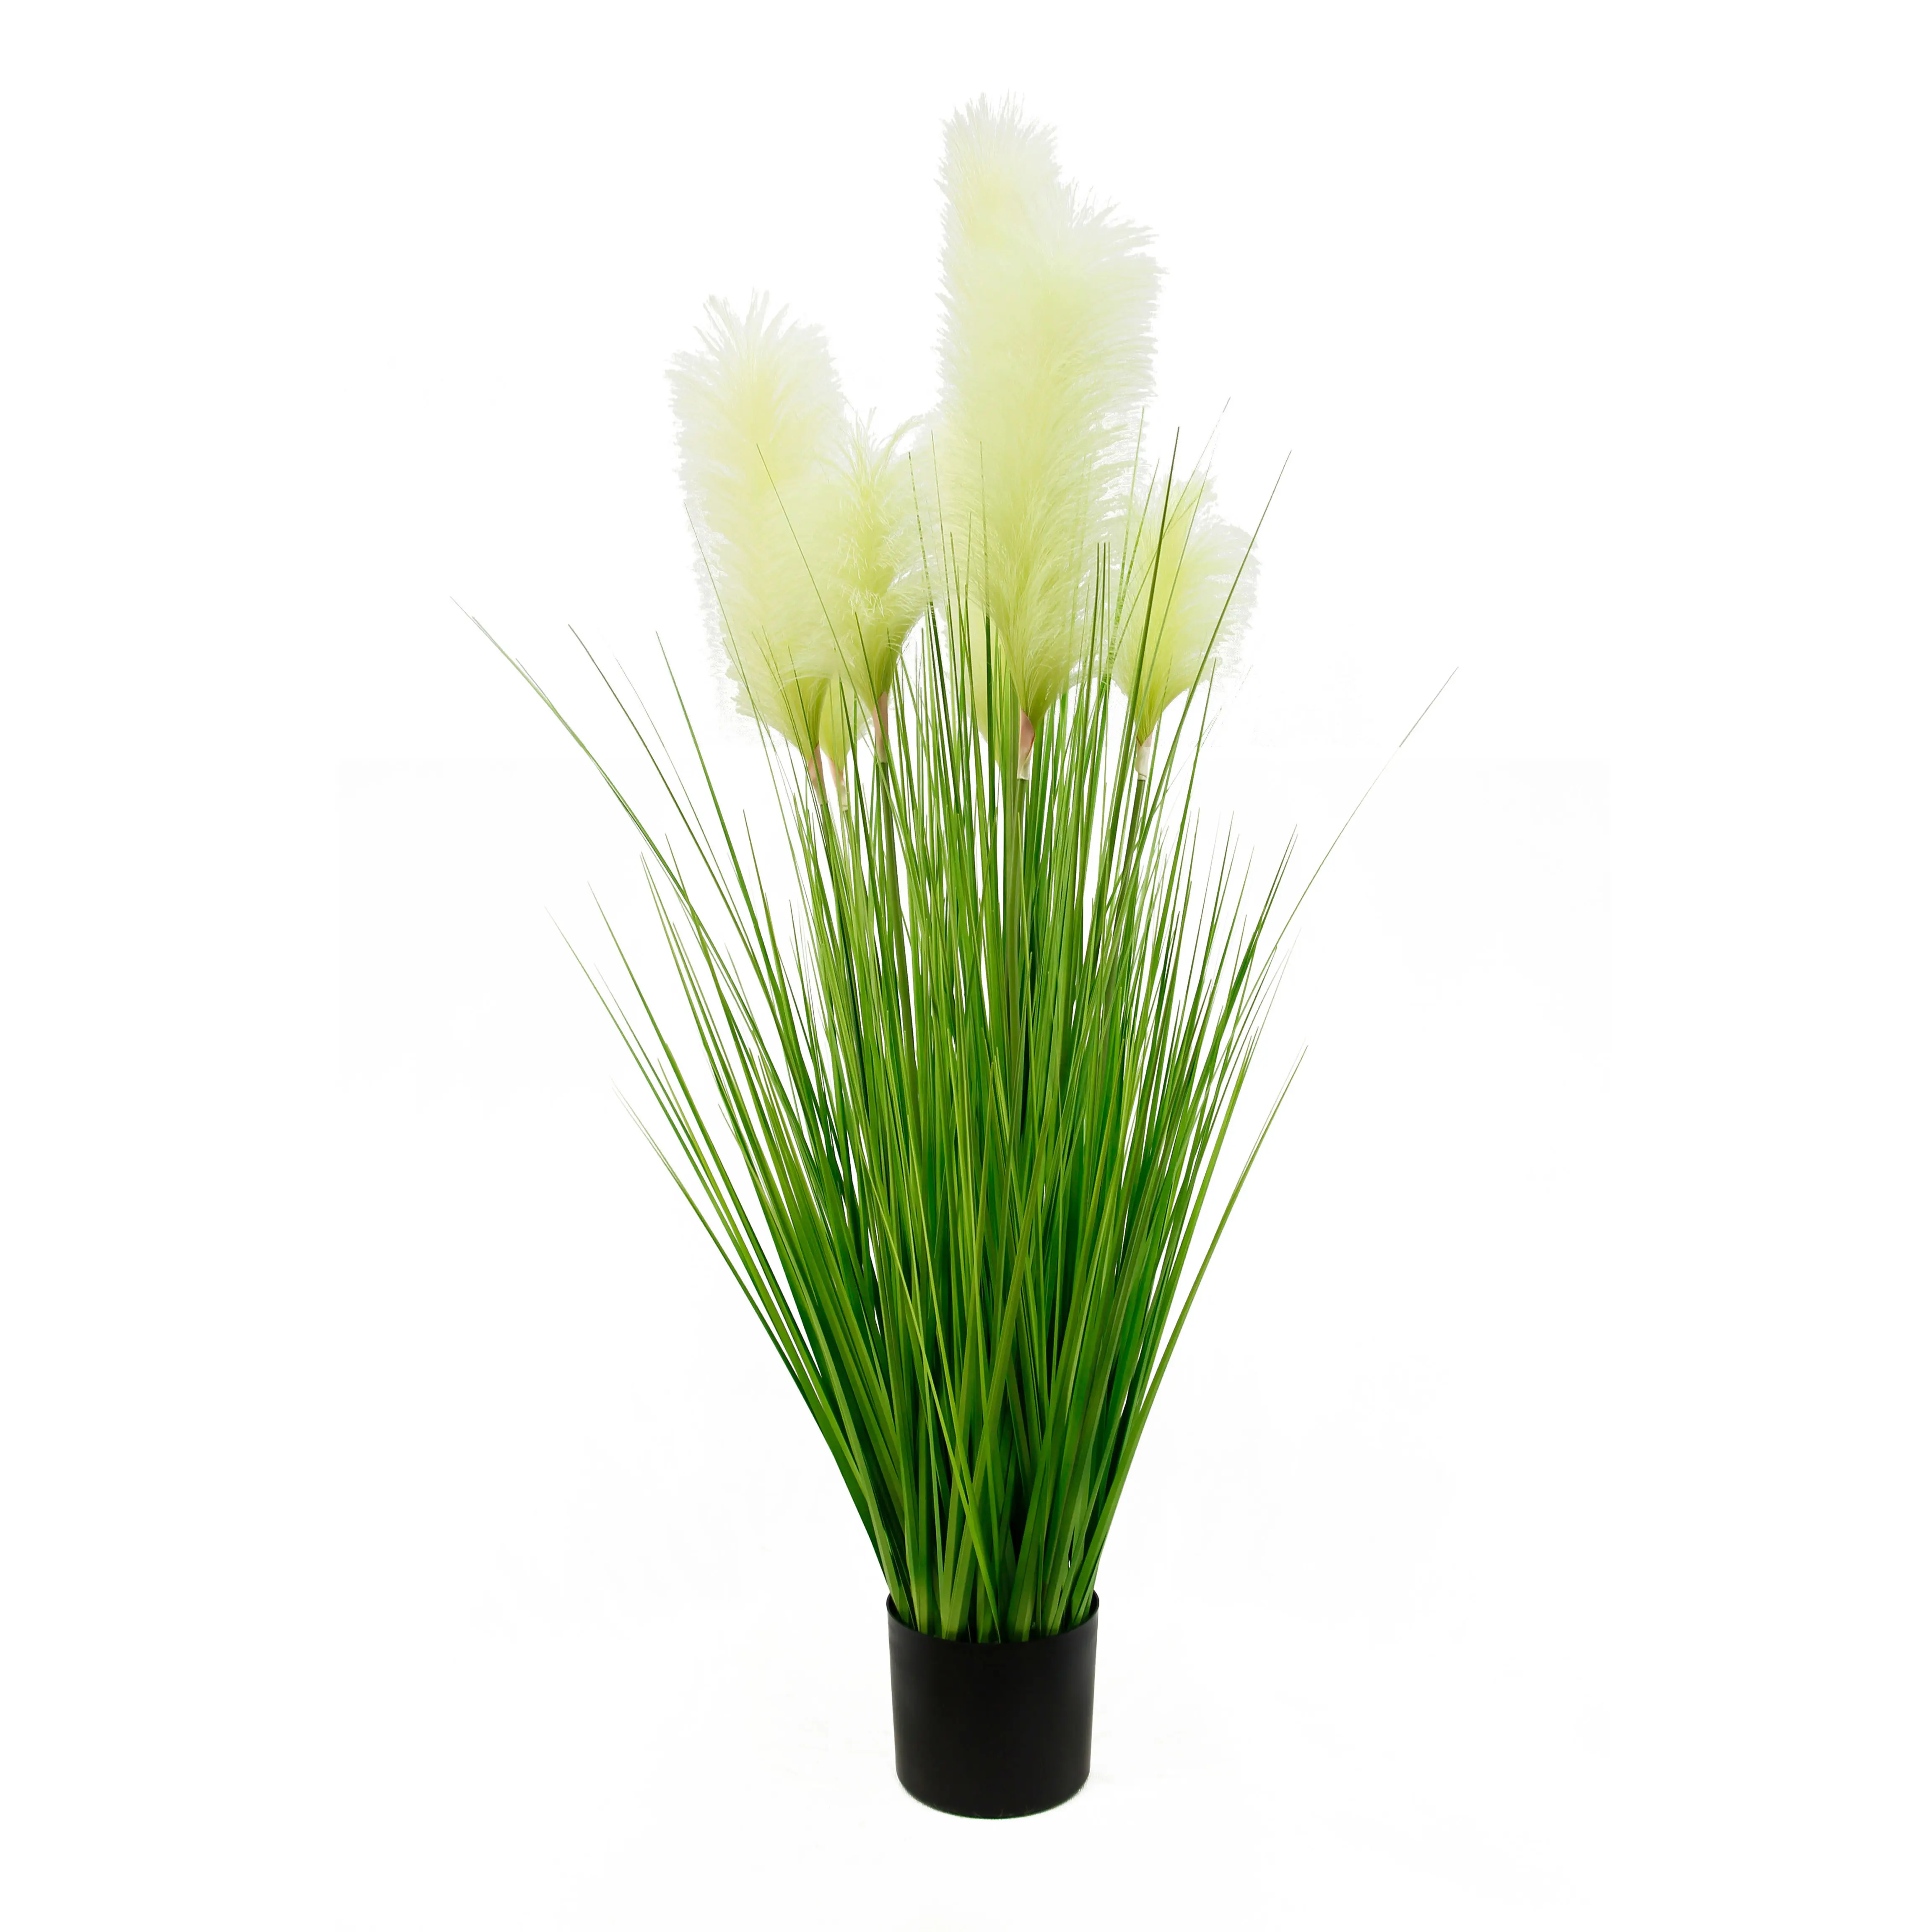 Suporte artificial de toque real para decoração, suporte de 120cm 7 galhos de cebola verde para bonsai